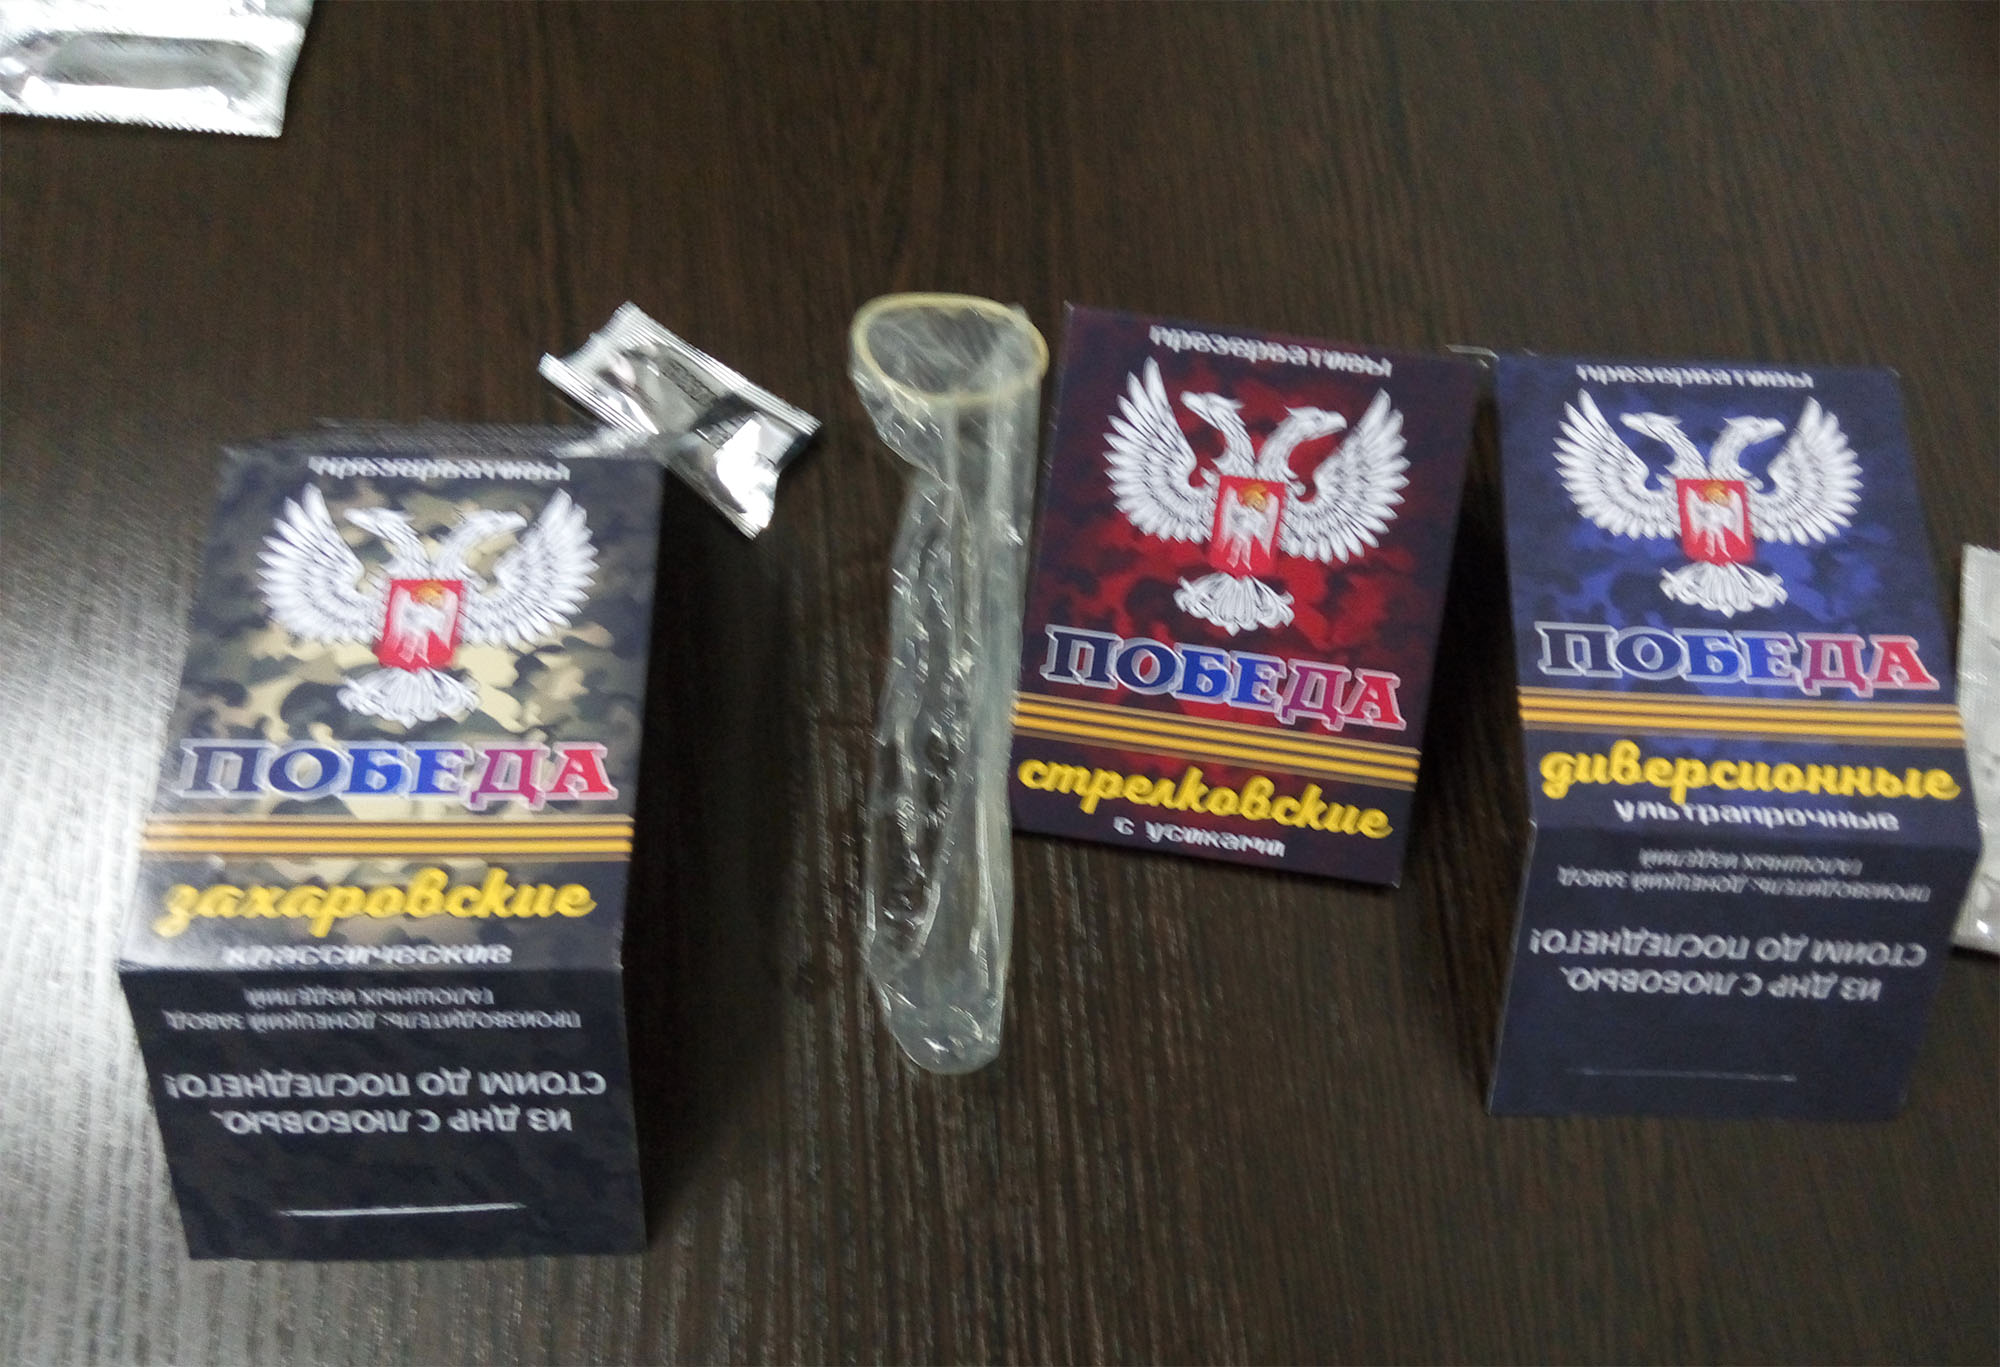 У мережі показали презервативи "ДНР": "захарівські" та "стрєлковські" з вусиками (ФОТО) - фото 1